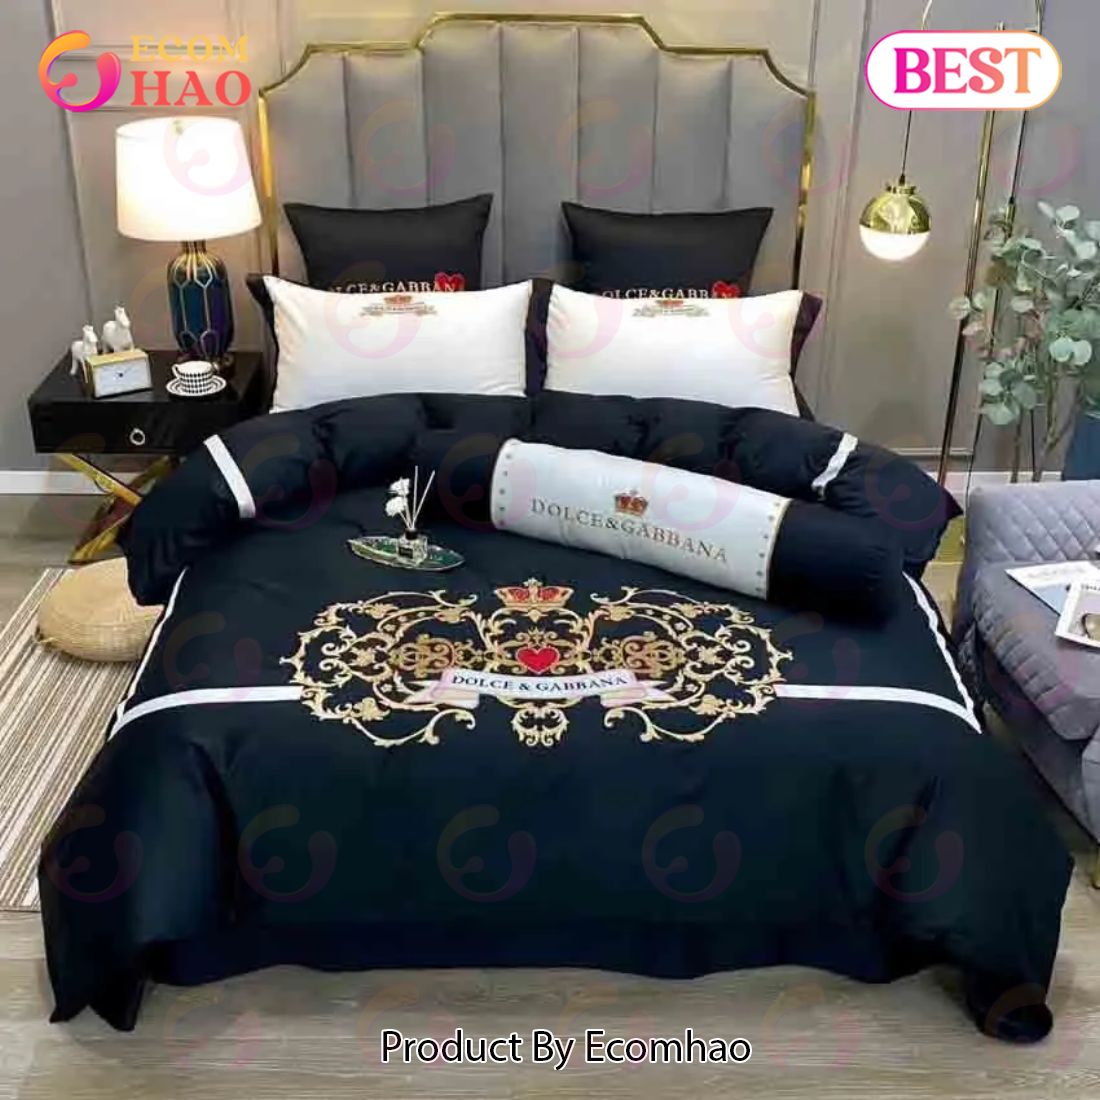 Black Dolce Gabbana Luxury Brand Bed Sets Bedroom Sets Comforter Sets Duvet Cover Bedspread For Home Decor Trending 2023 For Home